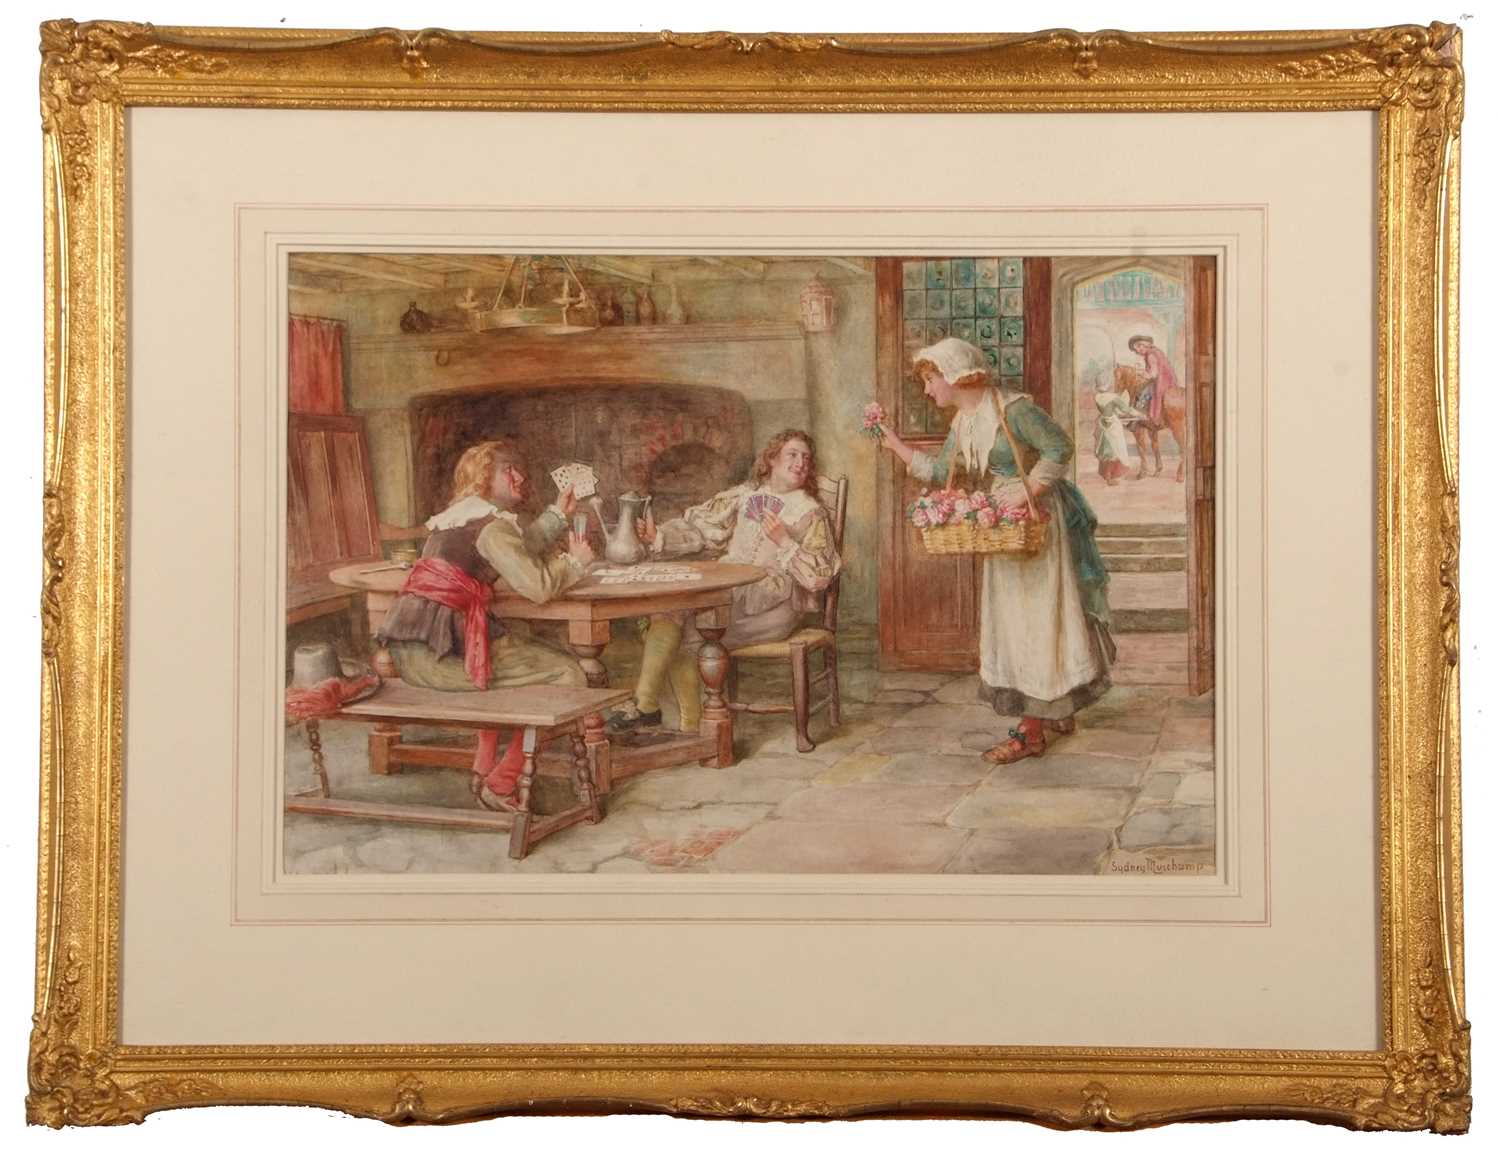 Francis Sydney Muschamp RBA (1851-1929), The Flower Seller, watercolour, signed, gilt framed, - Image 6 of 8